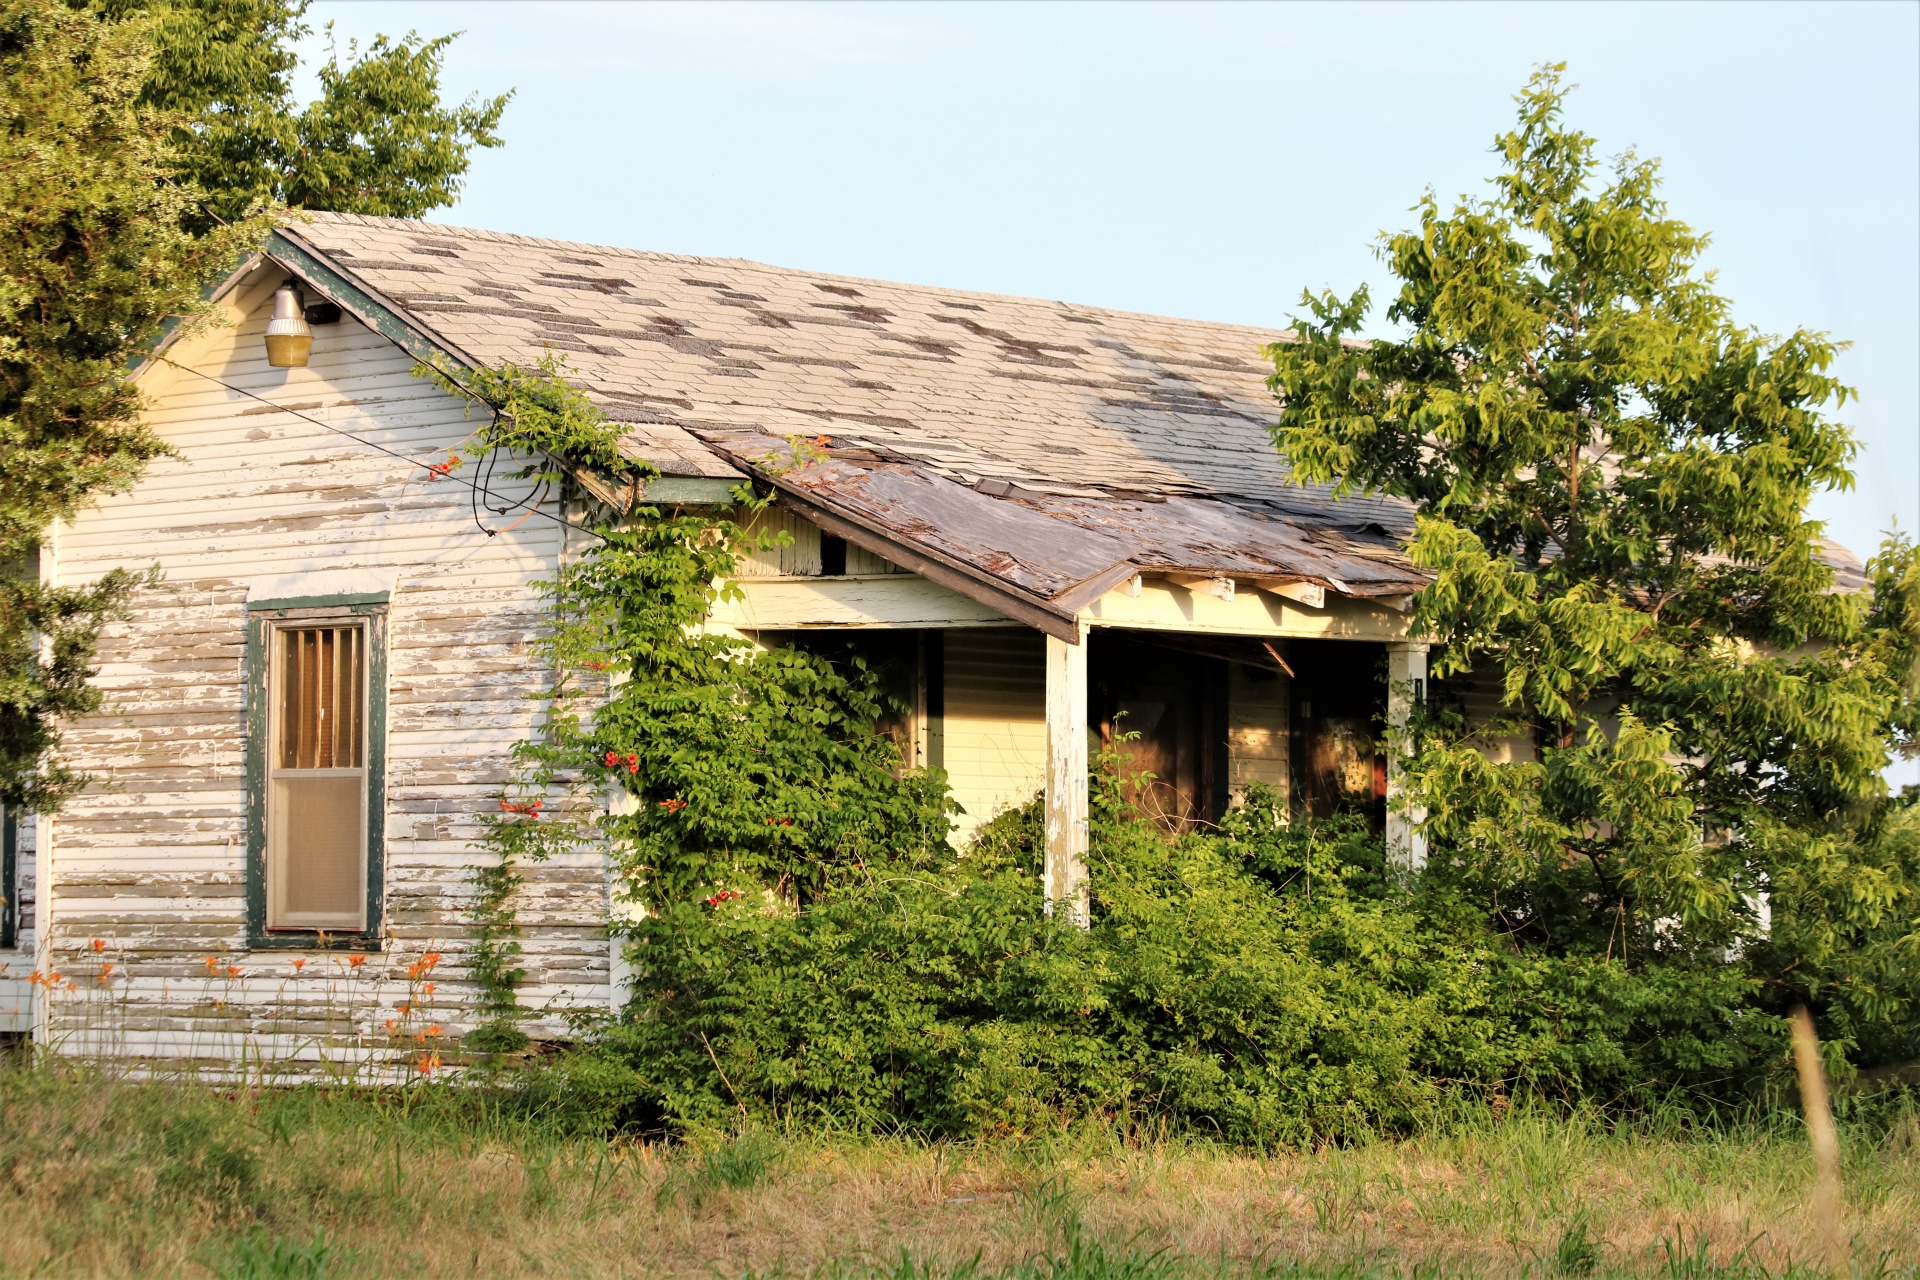 Maison abandonnée dans le pays